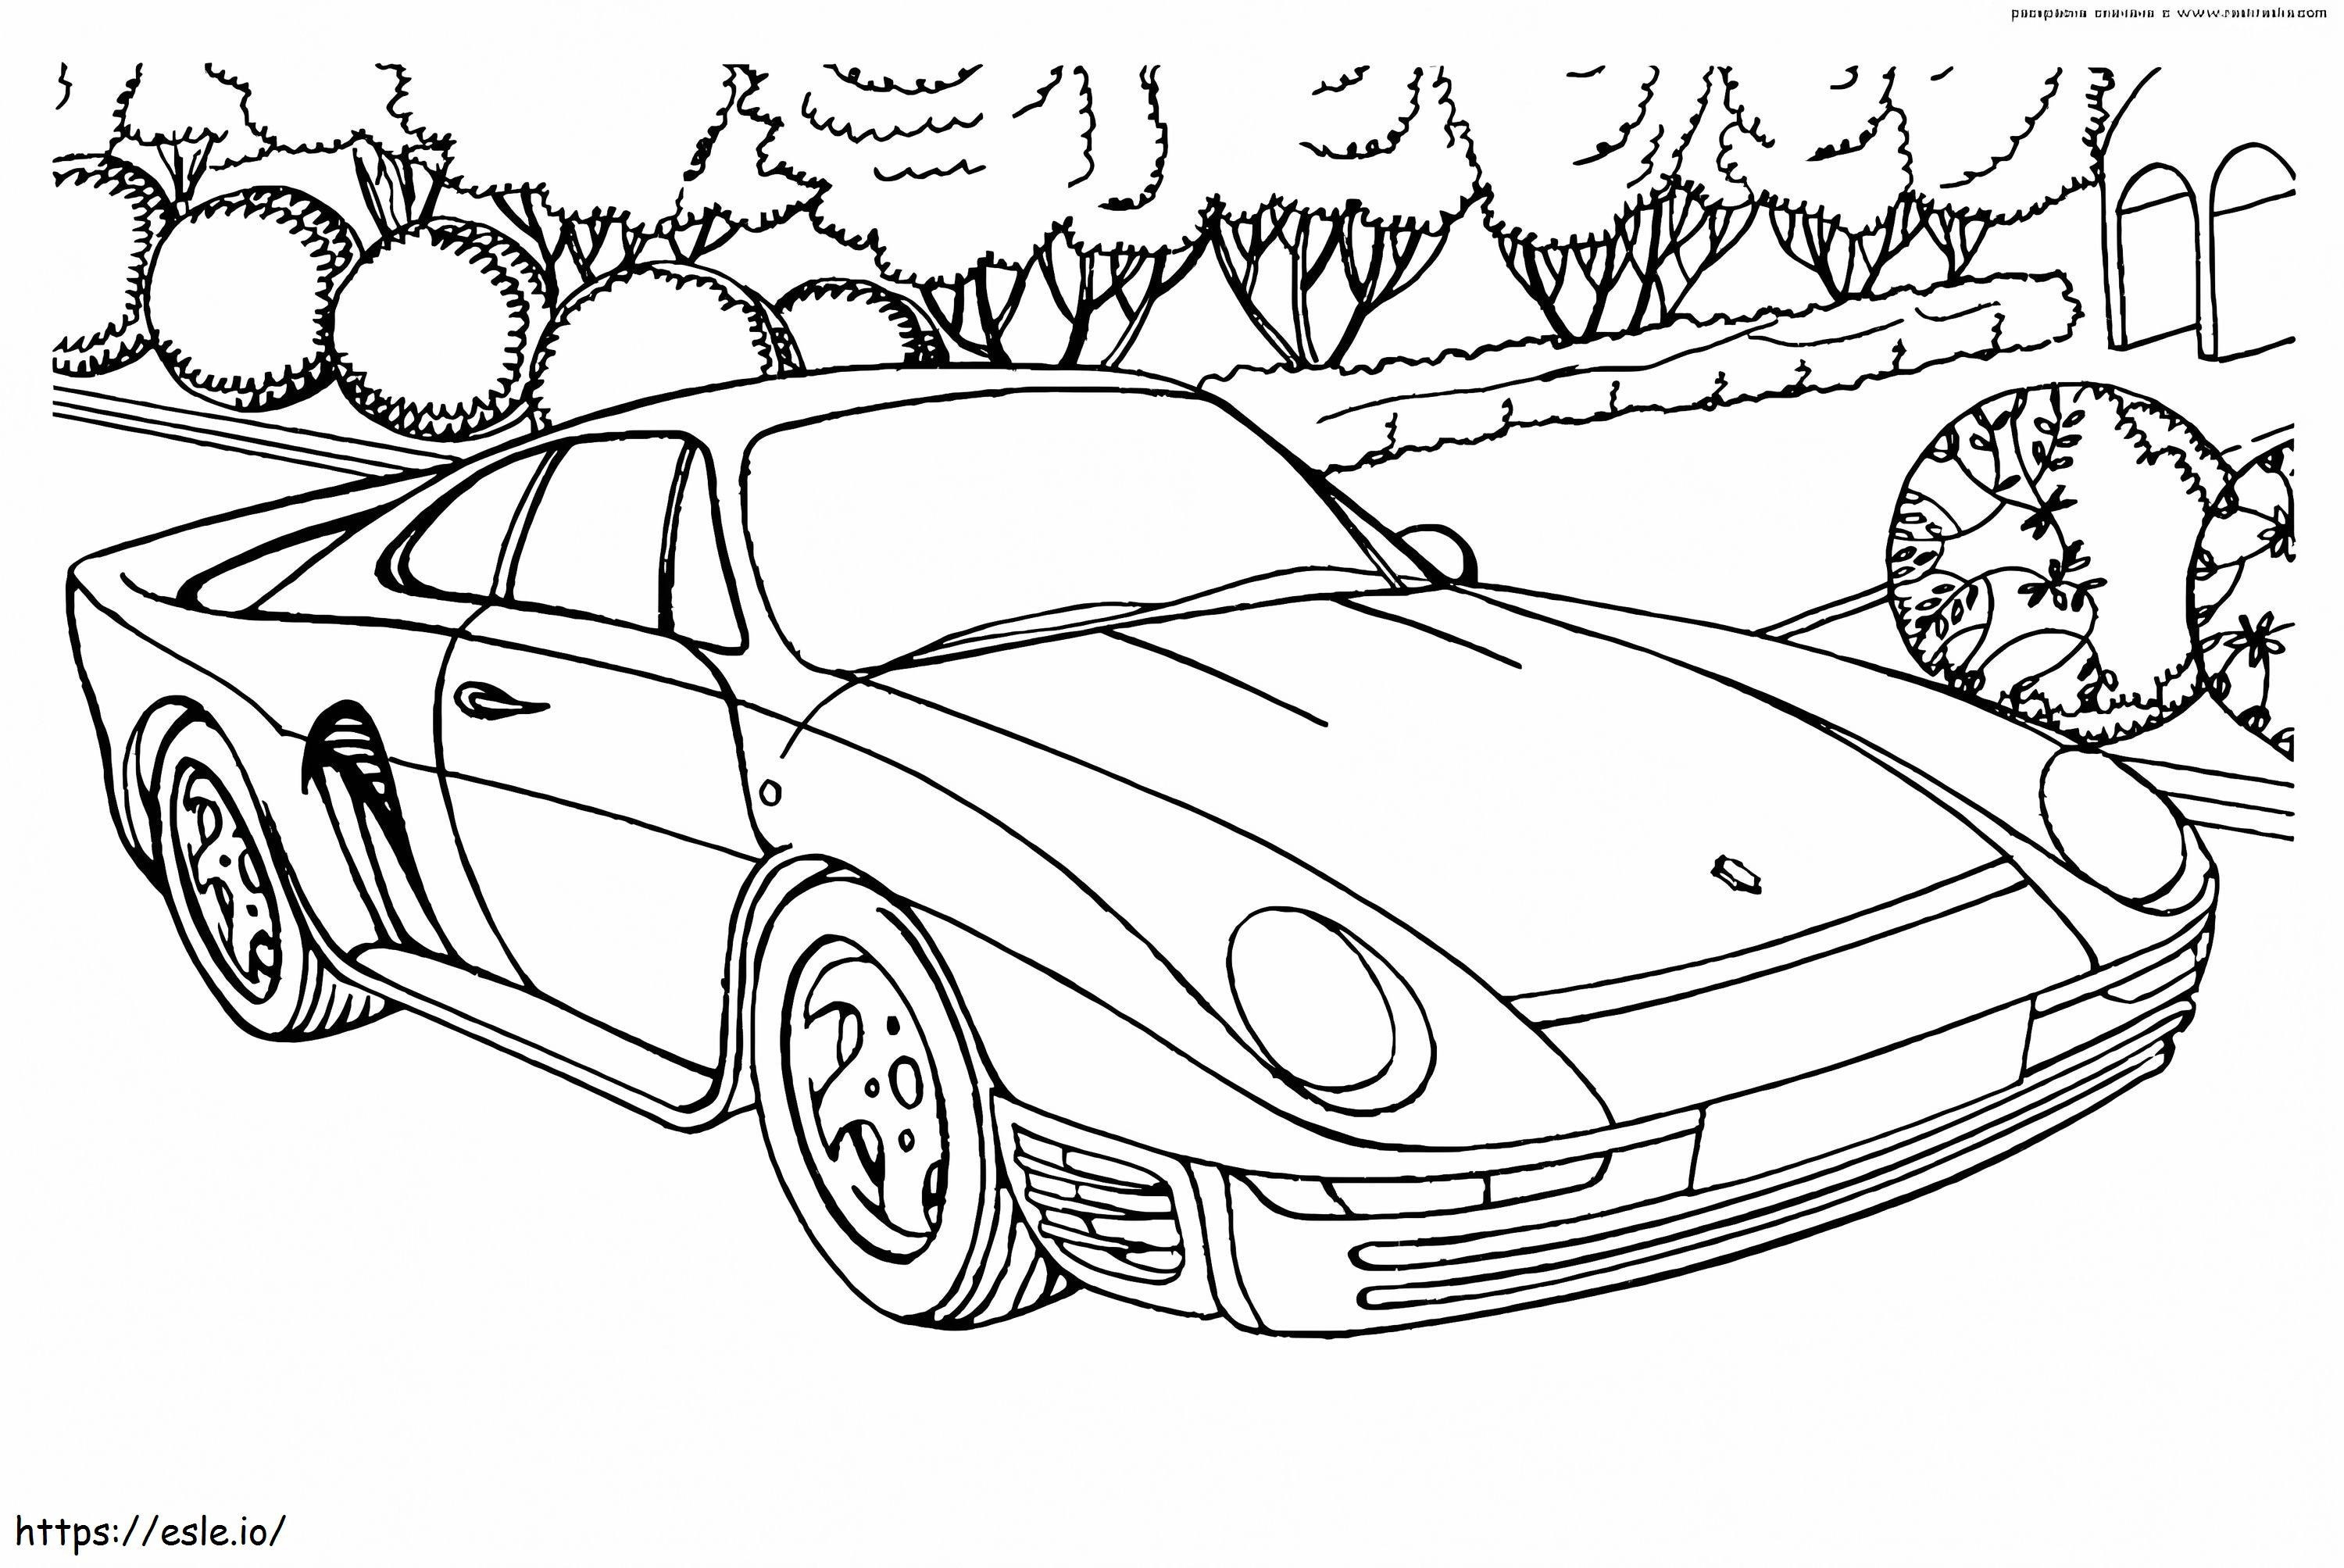 Porsche 959 coloring page